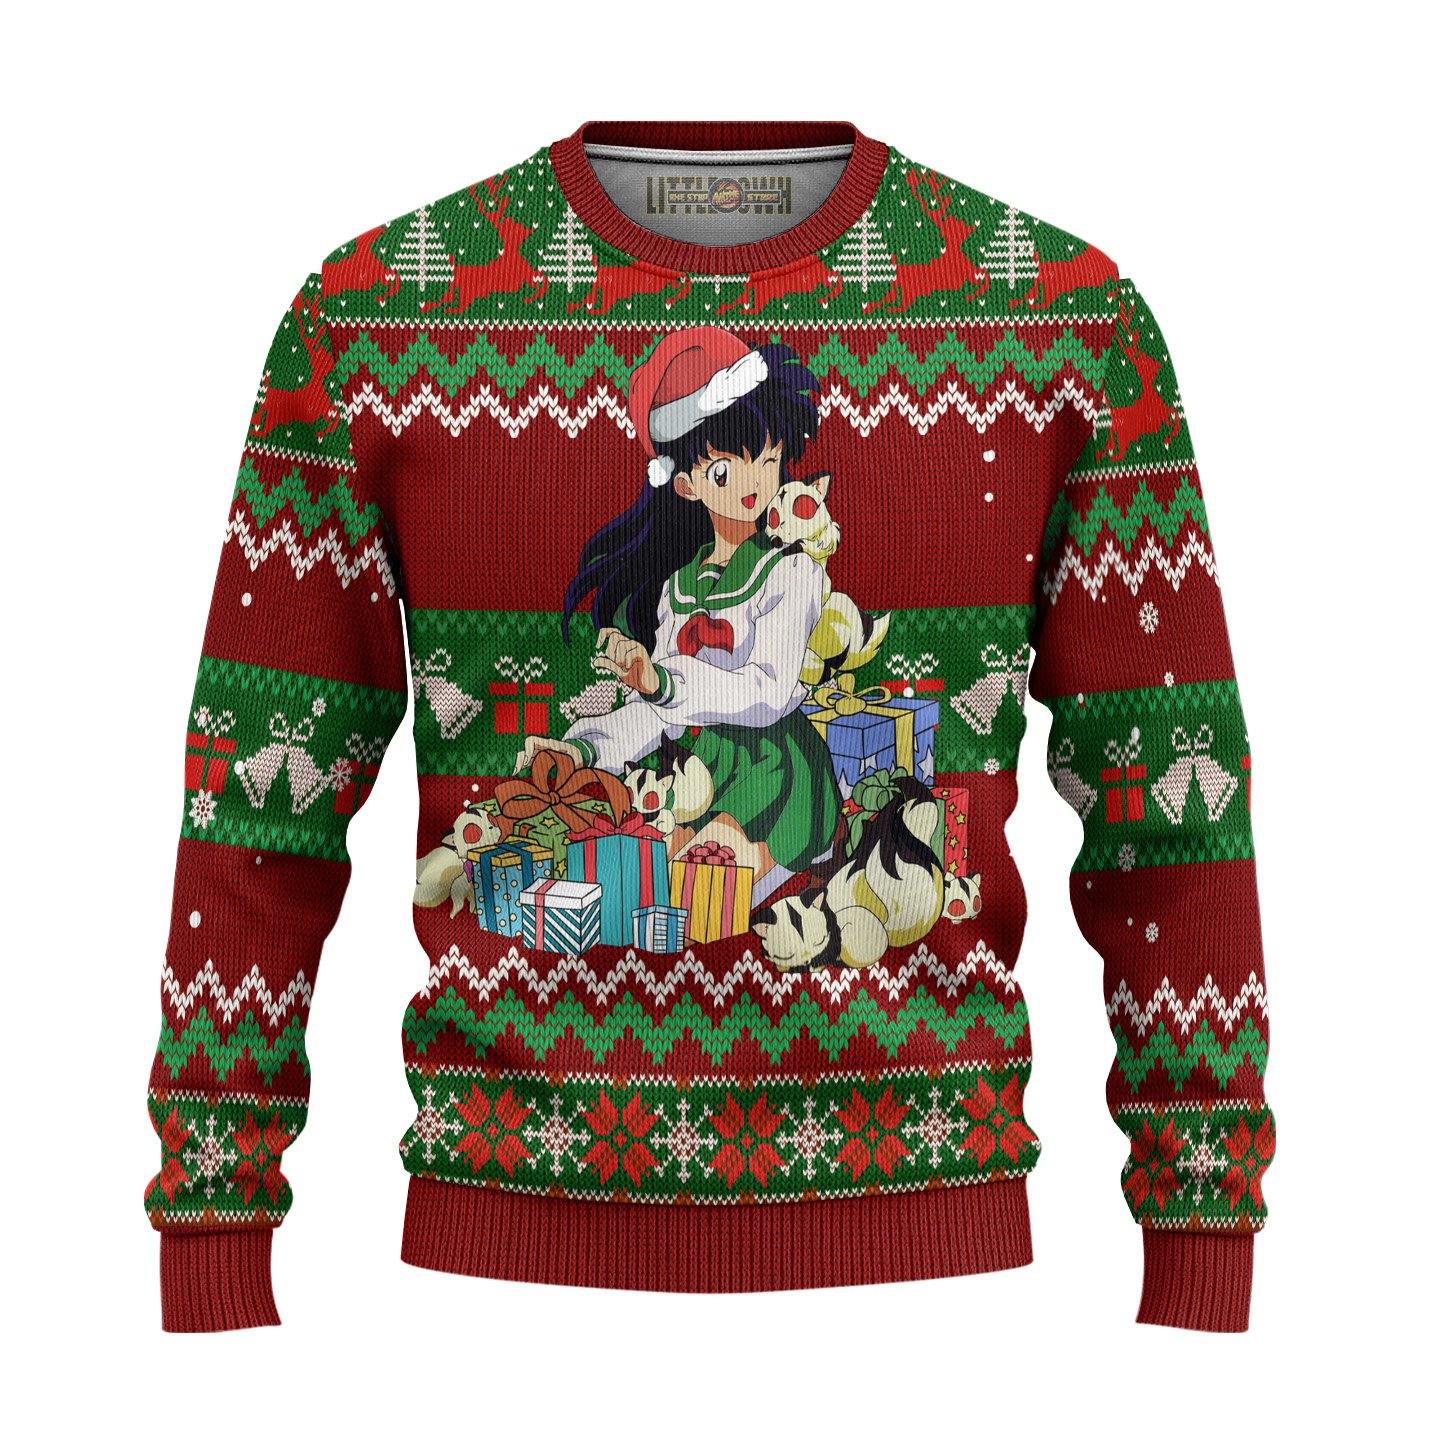 Kagome Ugly Christmas Sweater Inuyasha Anime New Design